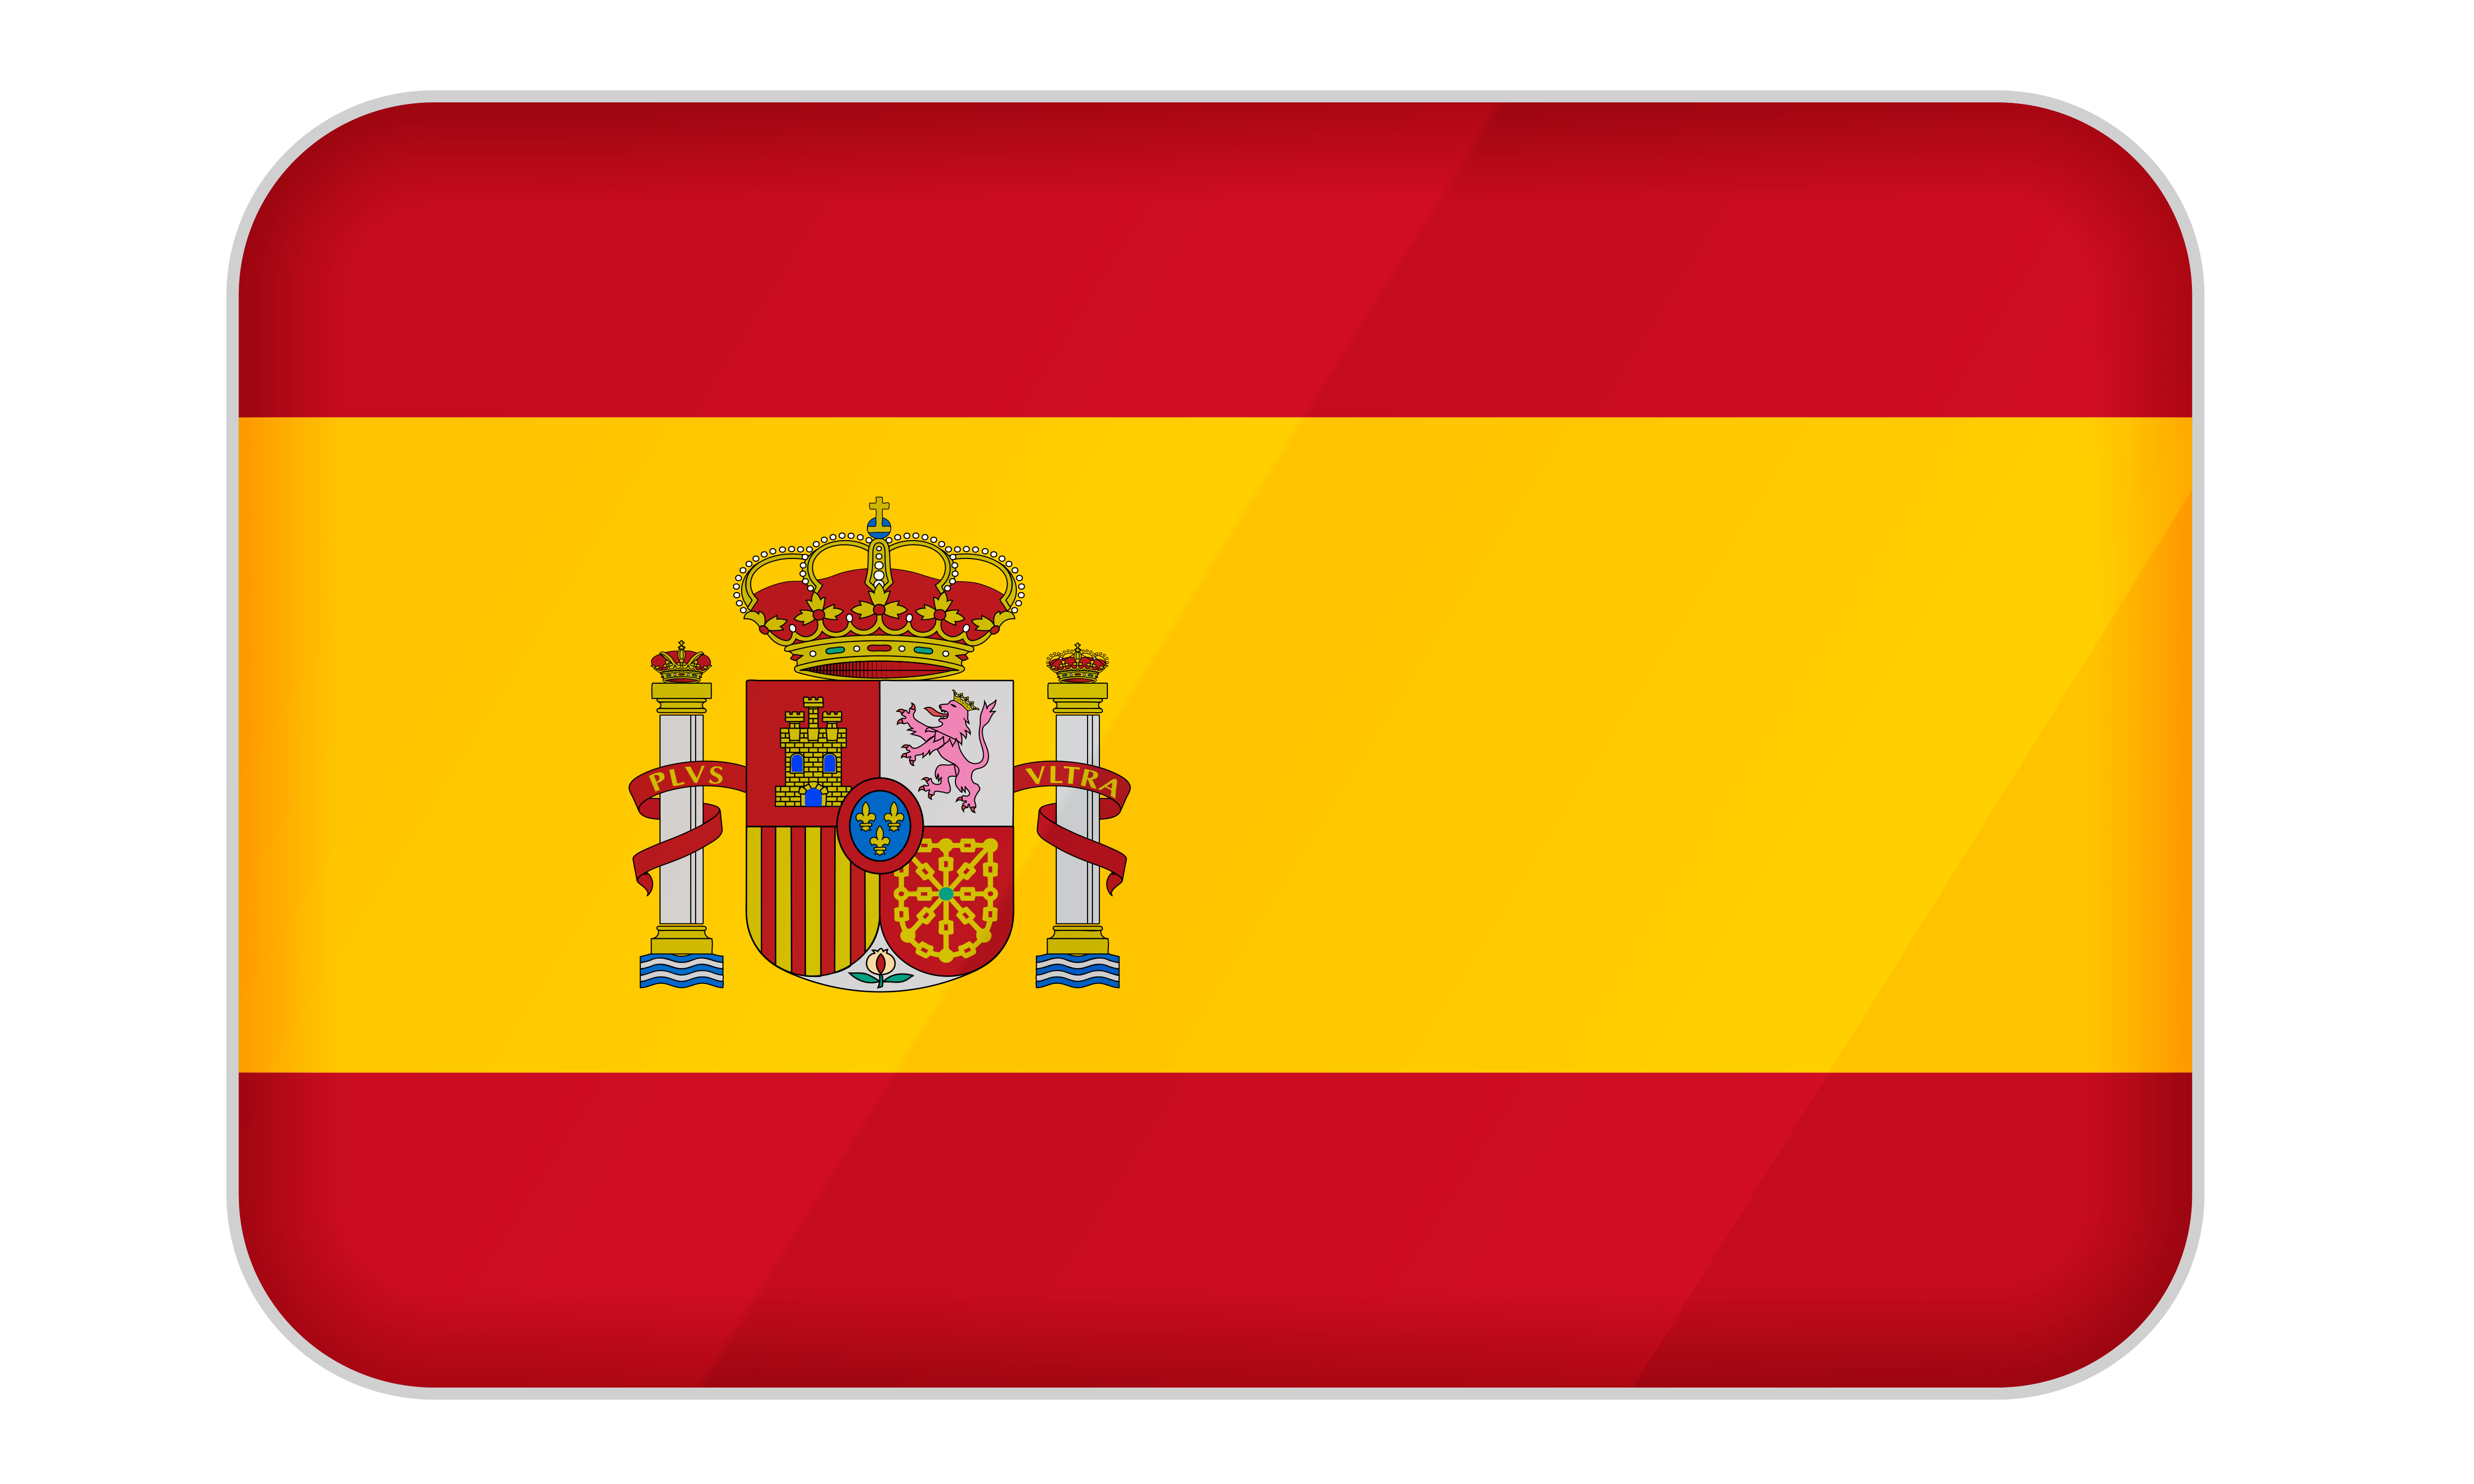 عکس پرچم اسپانیا